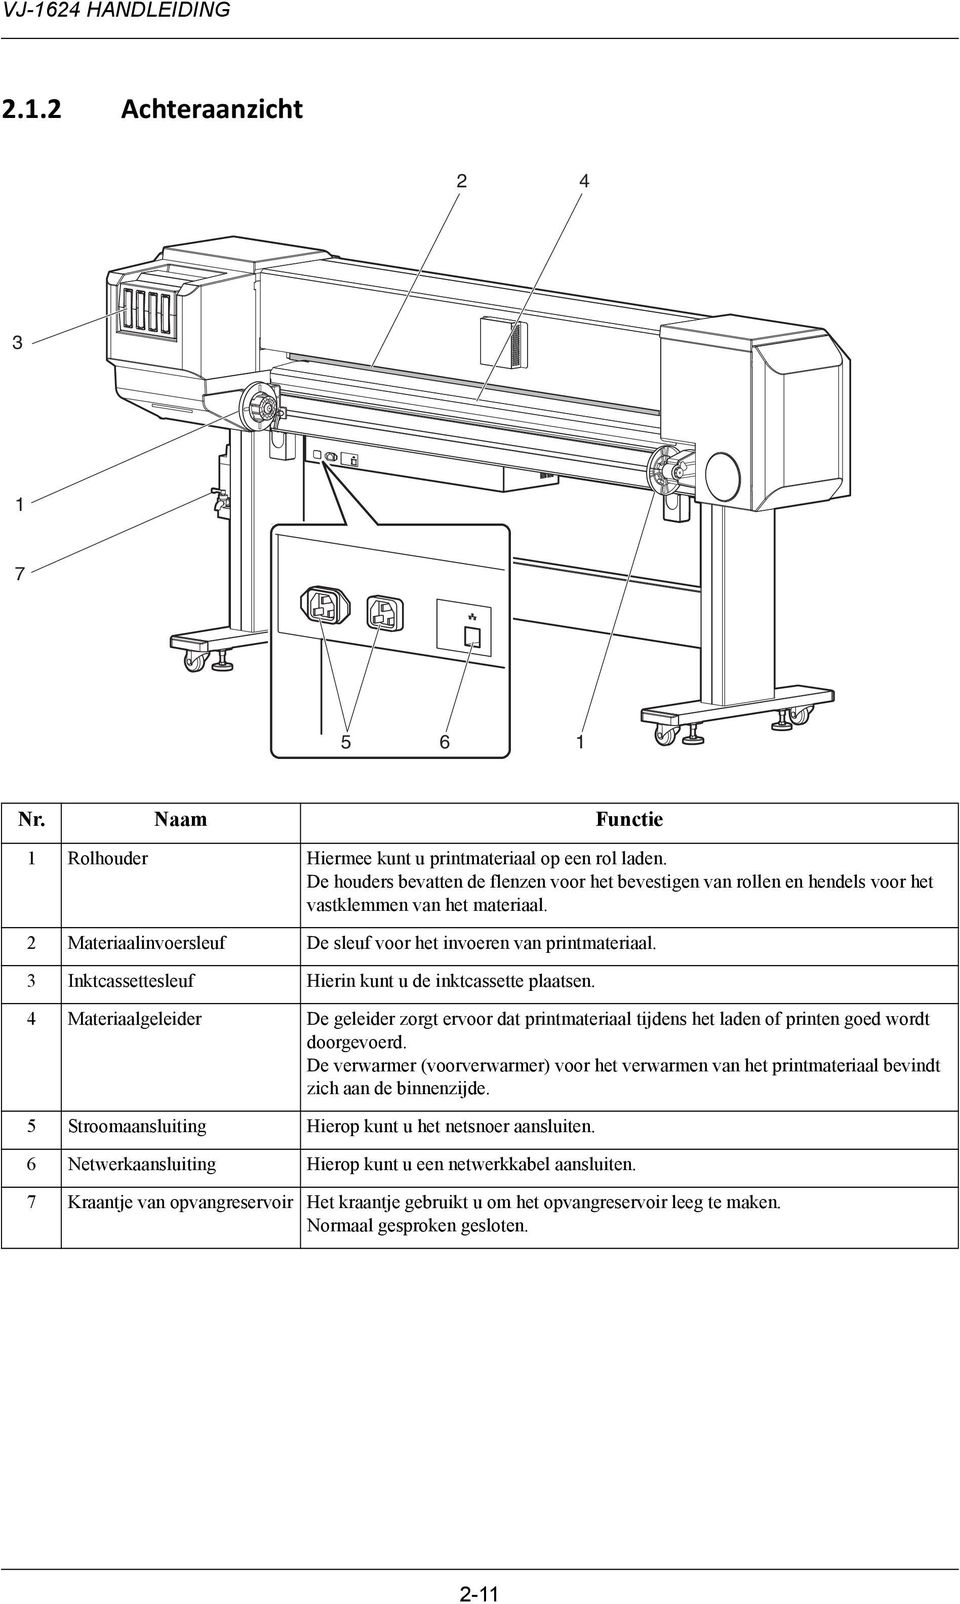 3 Inktcassettesleuf Hierin kunt u de inktcassette plaatsen. 4 Materiaalgeleider De geleider zorgt ervoor dat printmateriaal tijdens het laden of printen goed wordt doorgevoerd.